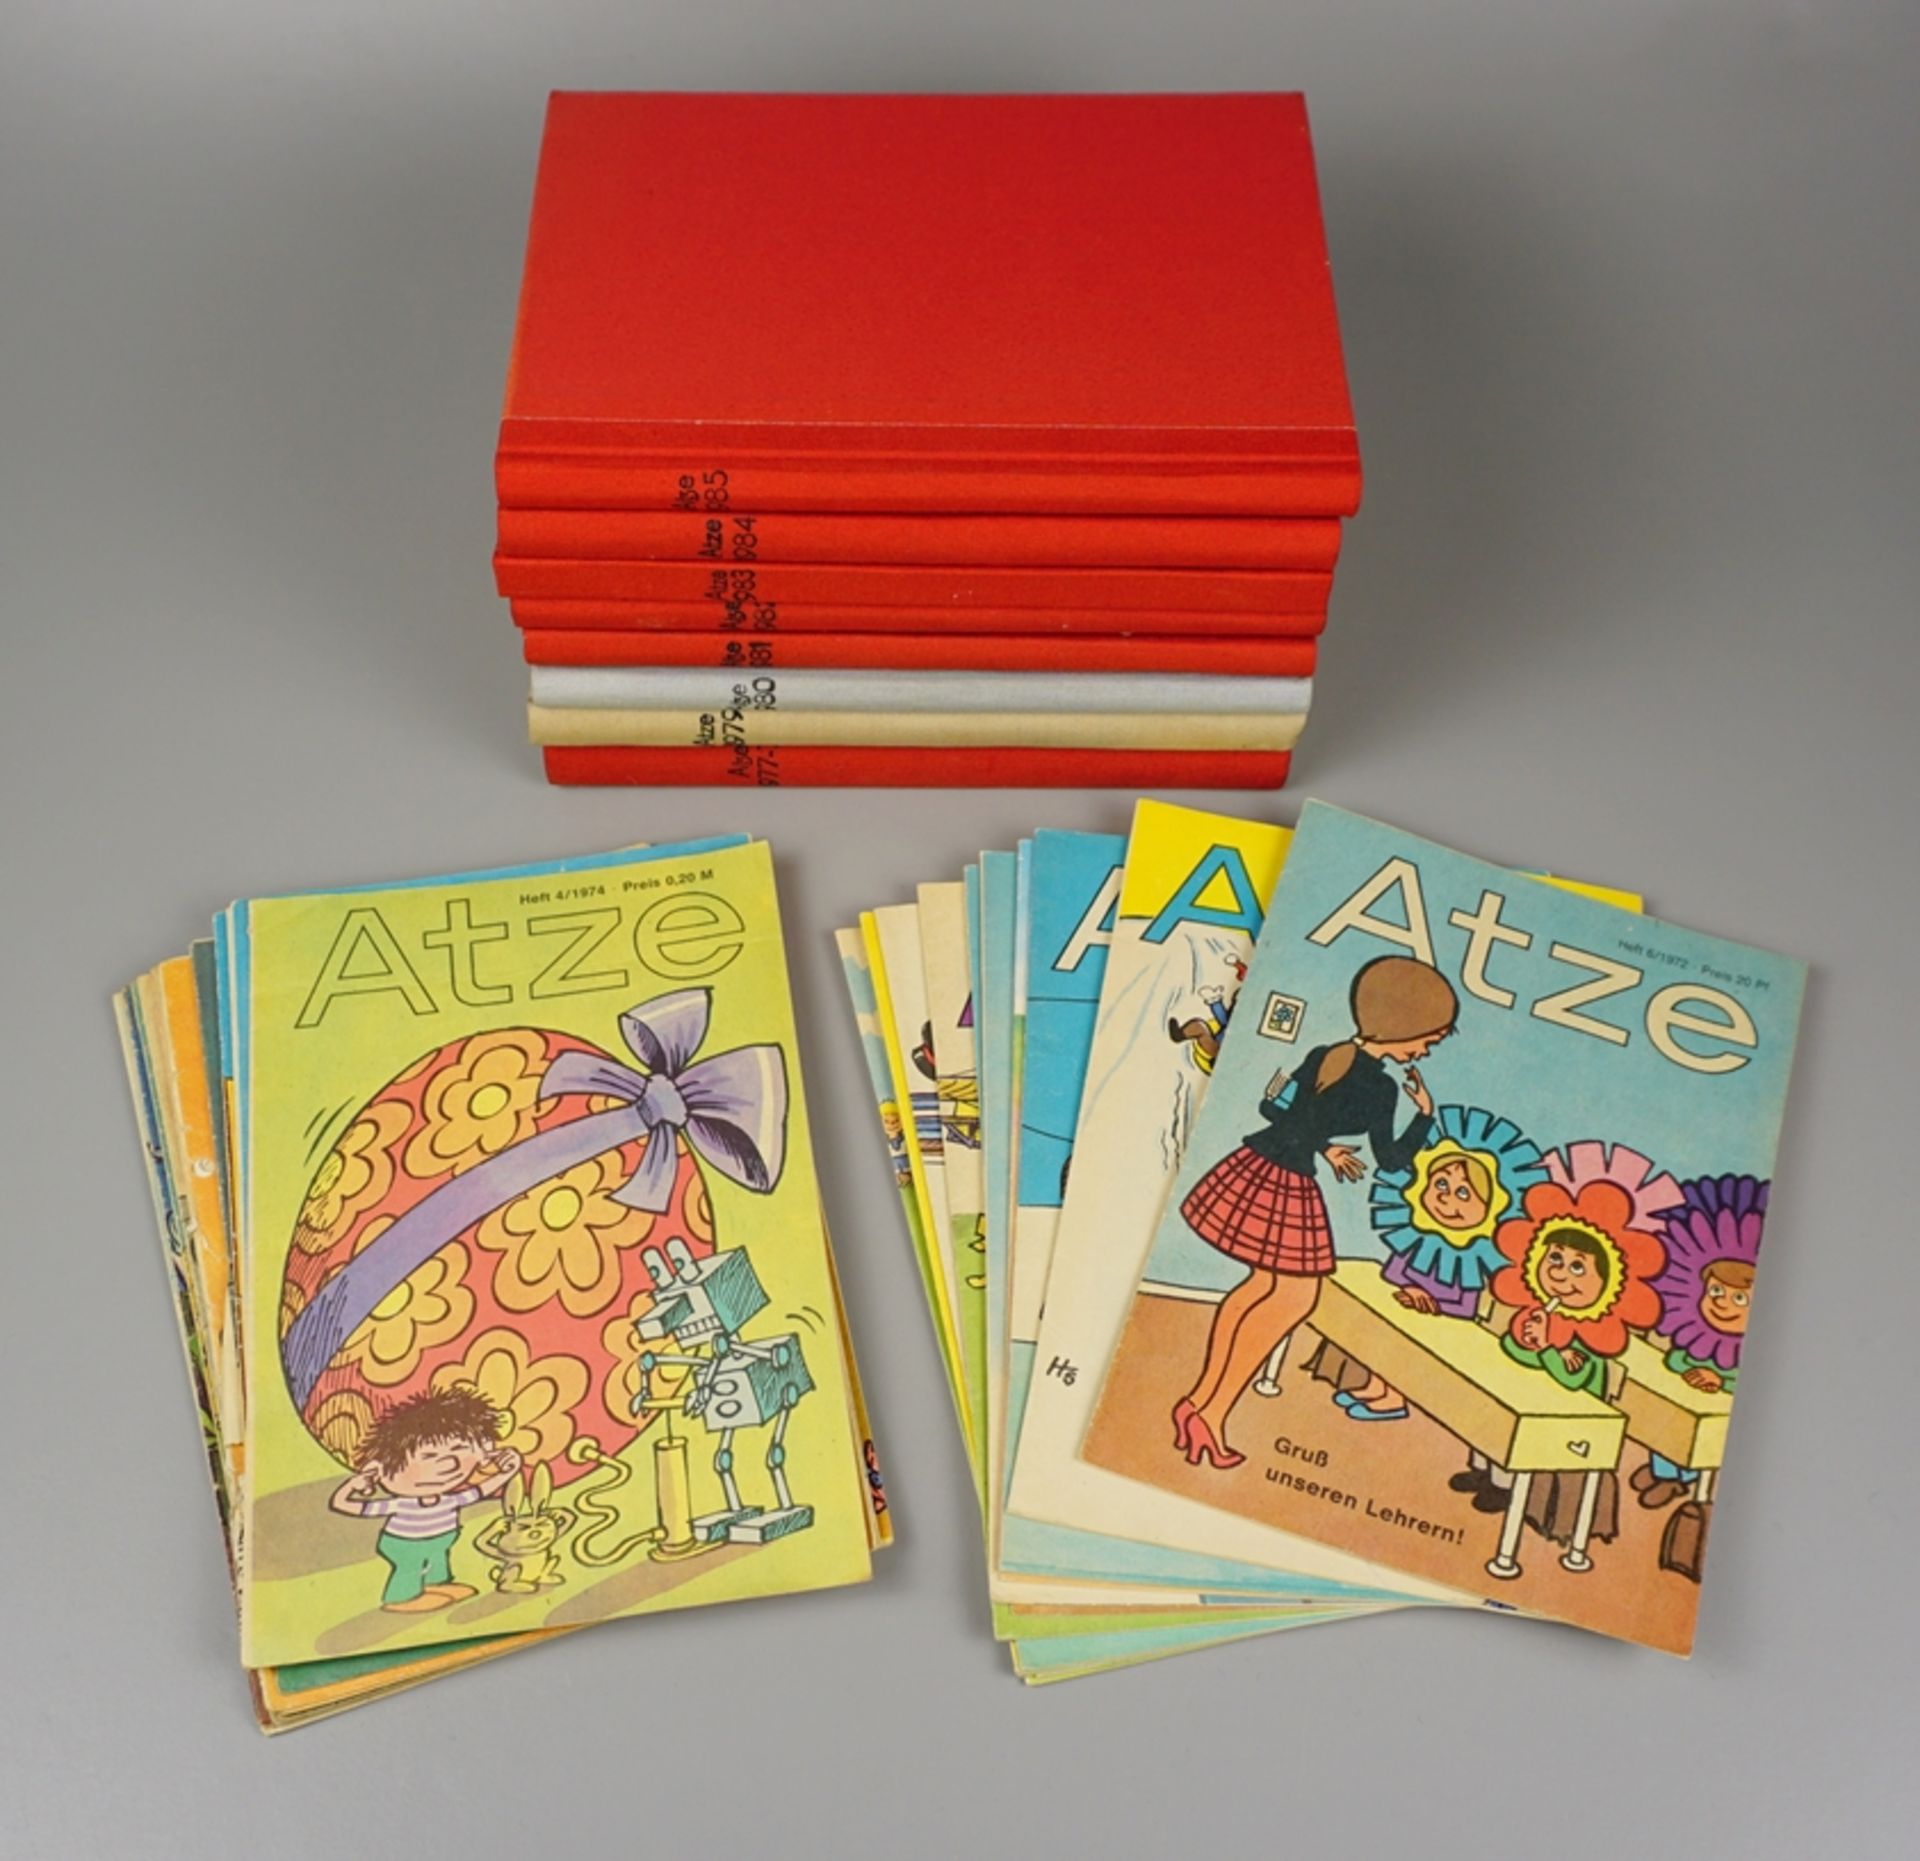 Kinder- und Jugendzeitschrift Atze, gebundene Jahrgänge 1977 bis 1985, DDR